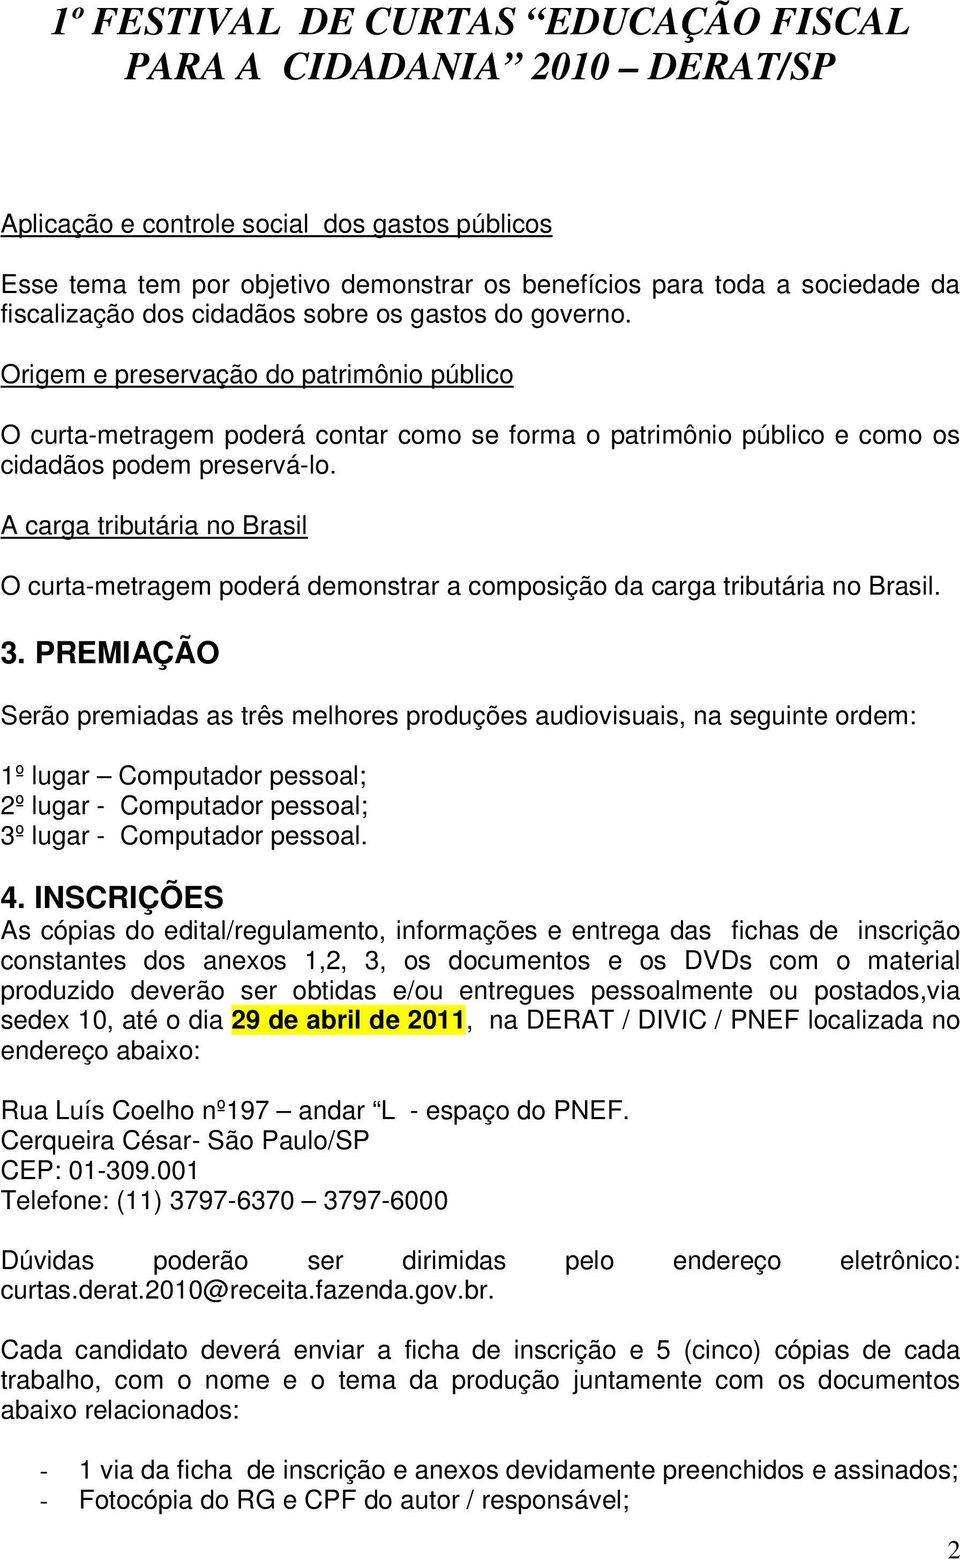 A carga tributária no Brasil O curta-metragem poderá demonstrar a composição da carga tributária no Brasil. 3.